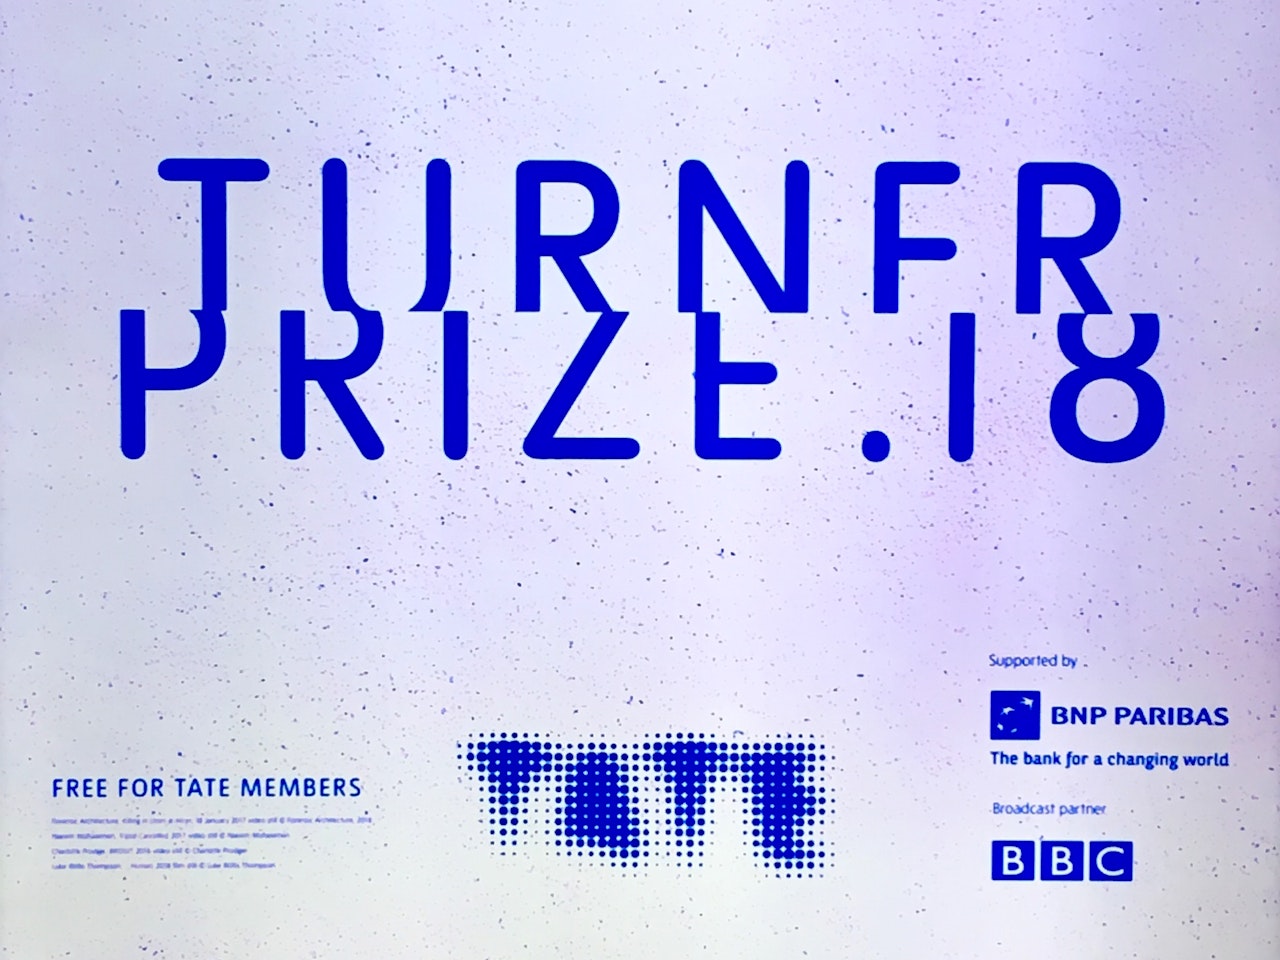 Turner Prize Nomination